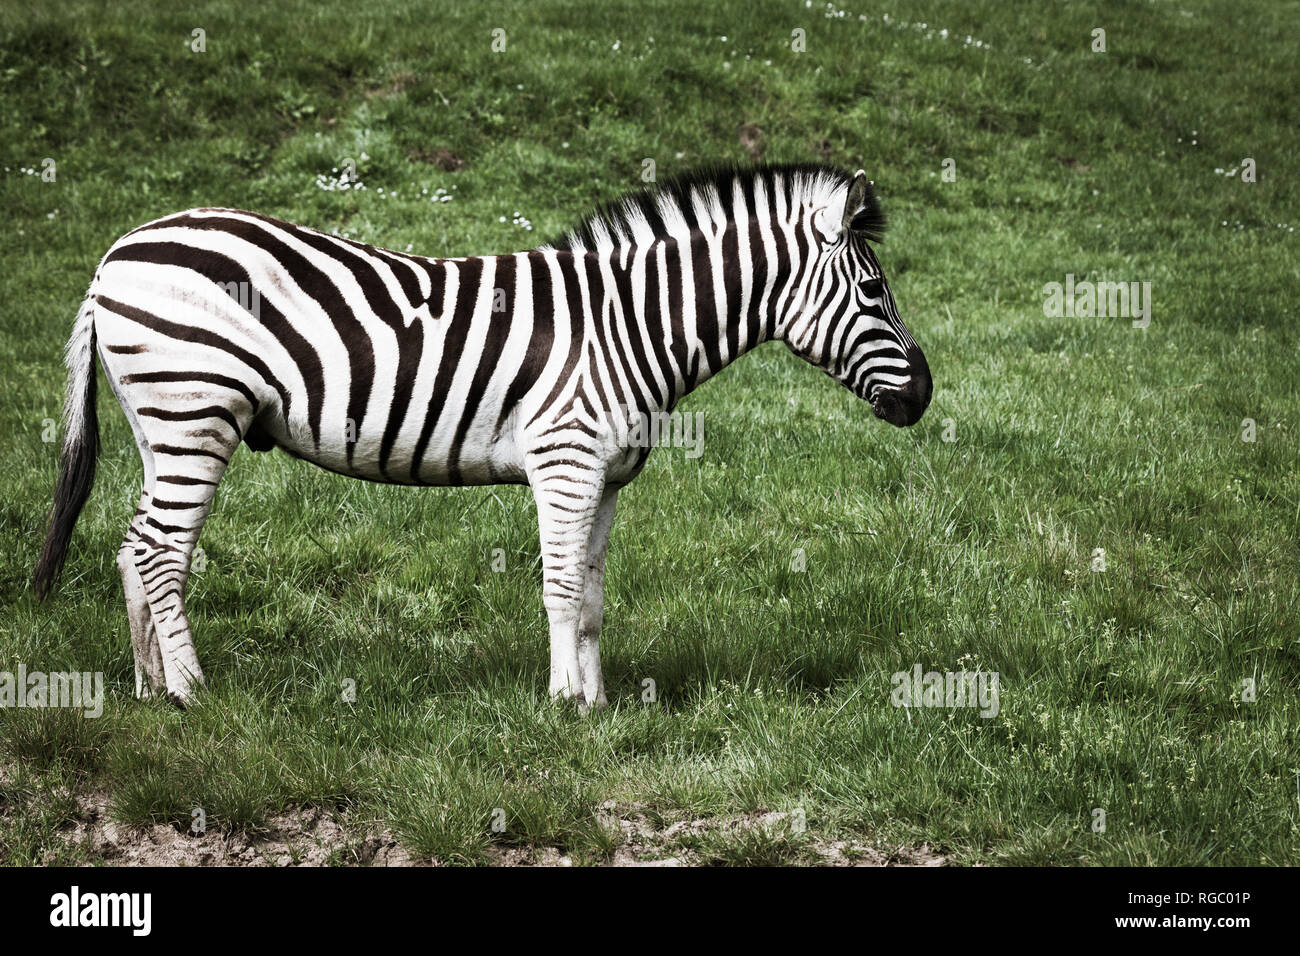 Eine lebendige Schwarz und Weiß Zebra steht auf einem Hügel von Frühling Gras. Stockfoto